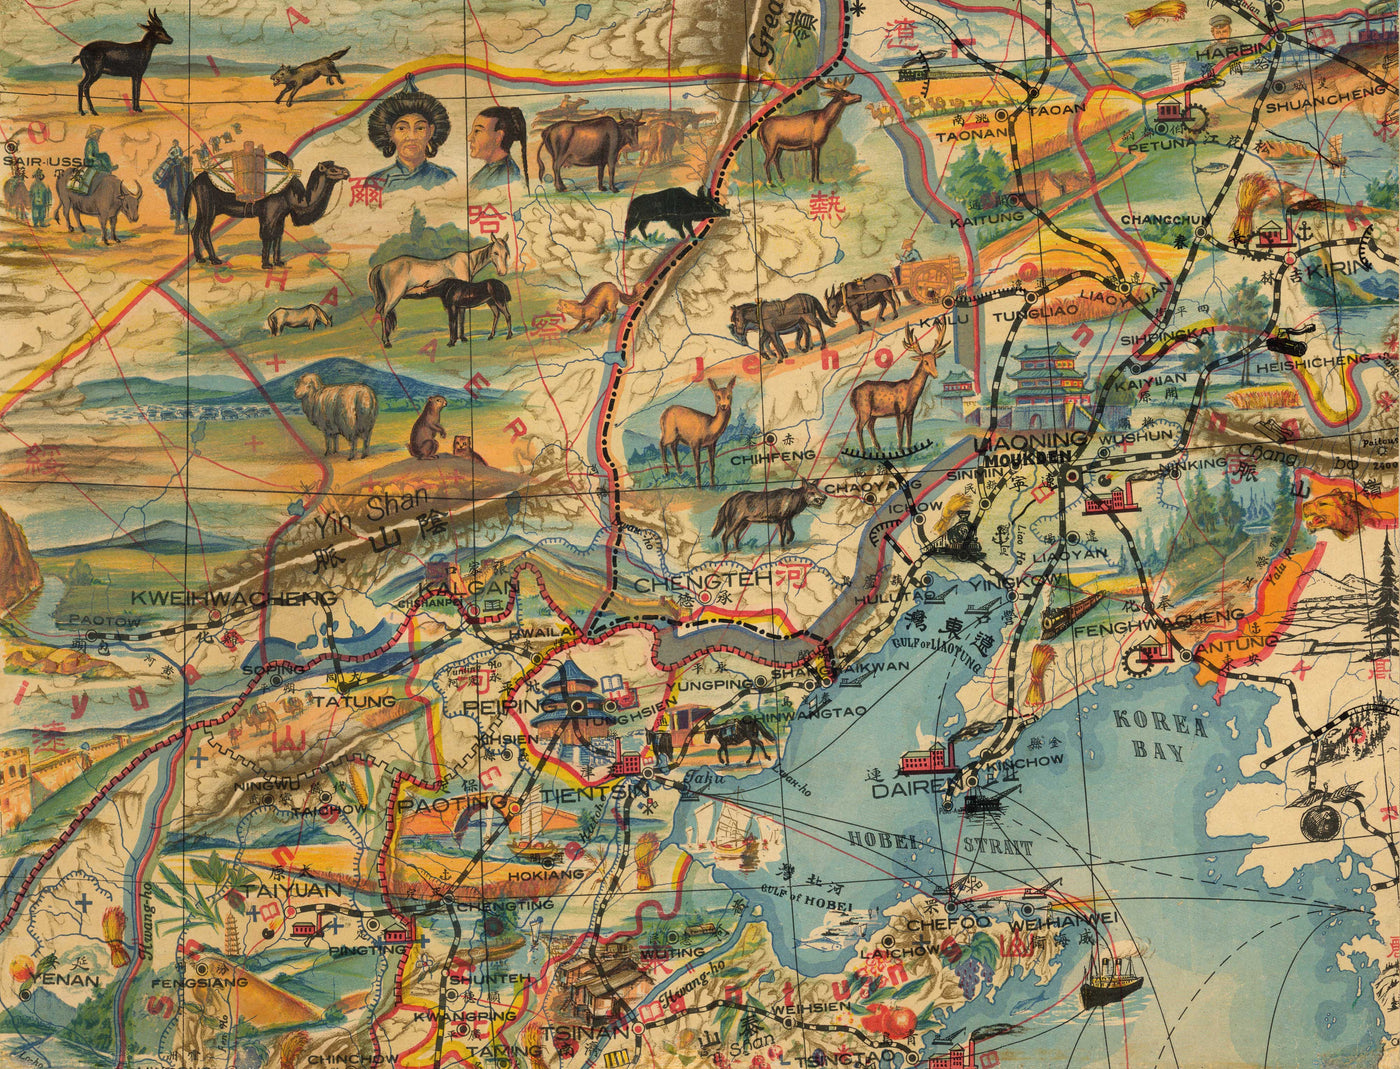 Raro mapa pictórico antiguo de China en 1931 por G Primakoff - Taiwán, Hainan, Hong Kong, Hanoi, Liaoning